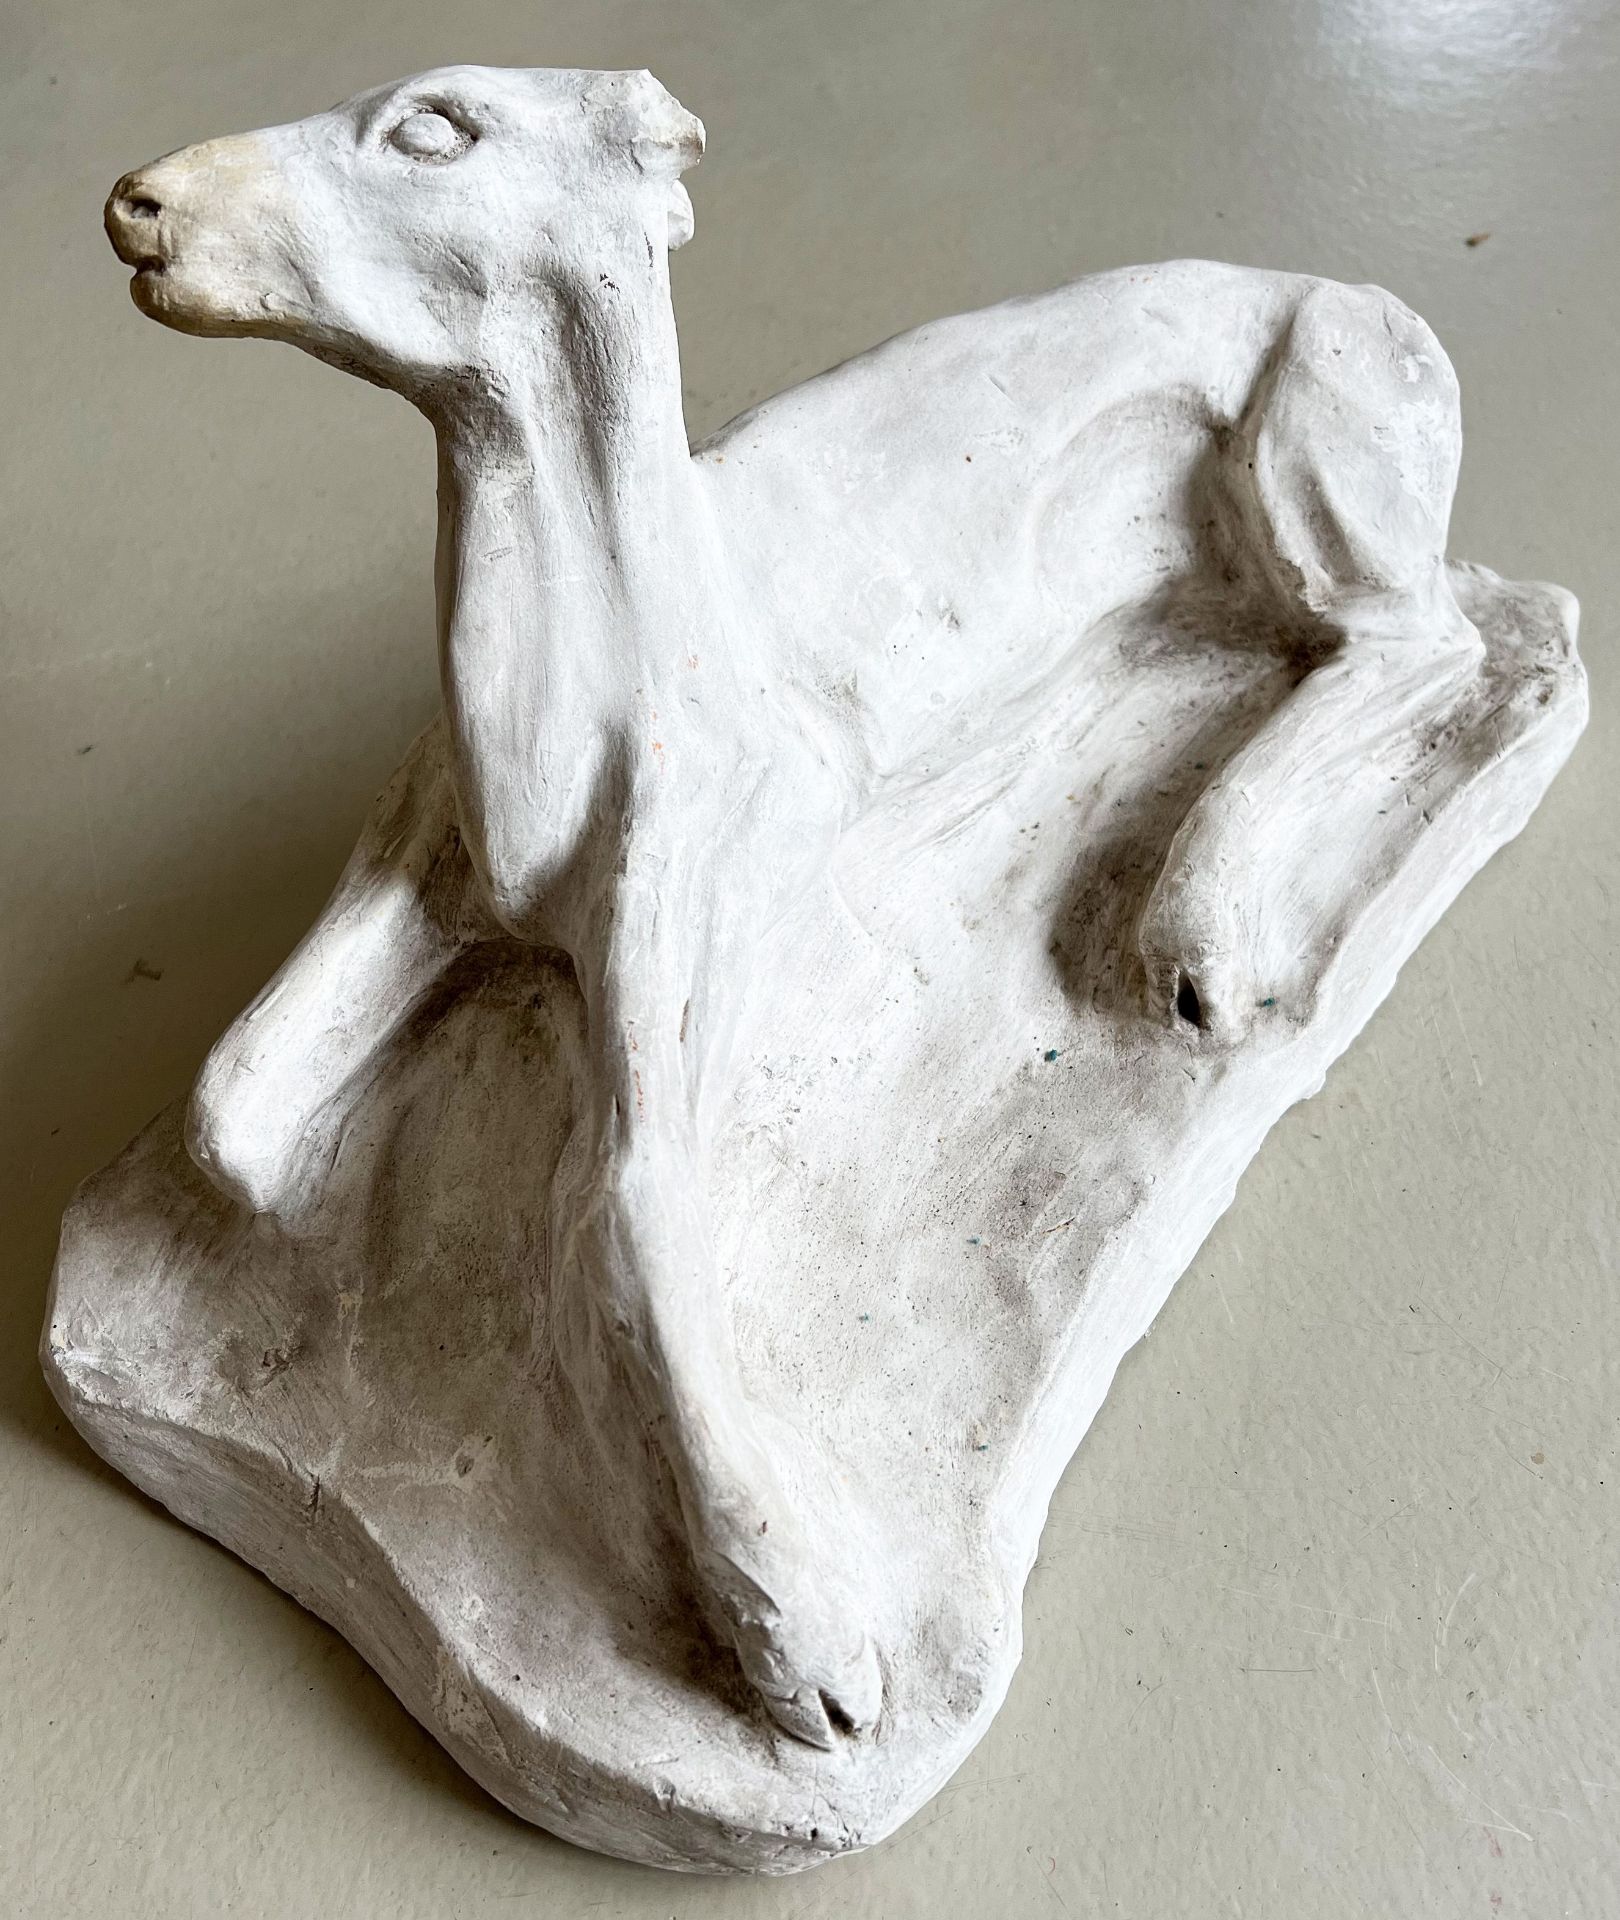 Reh, Stuck/ Roe deer, stucco. Bildhauer aus Tübingen, ein Ohr fehlt, Altersspuren, 42 x 24 x 20 cm - Image 4 of 6